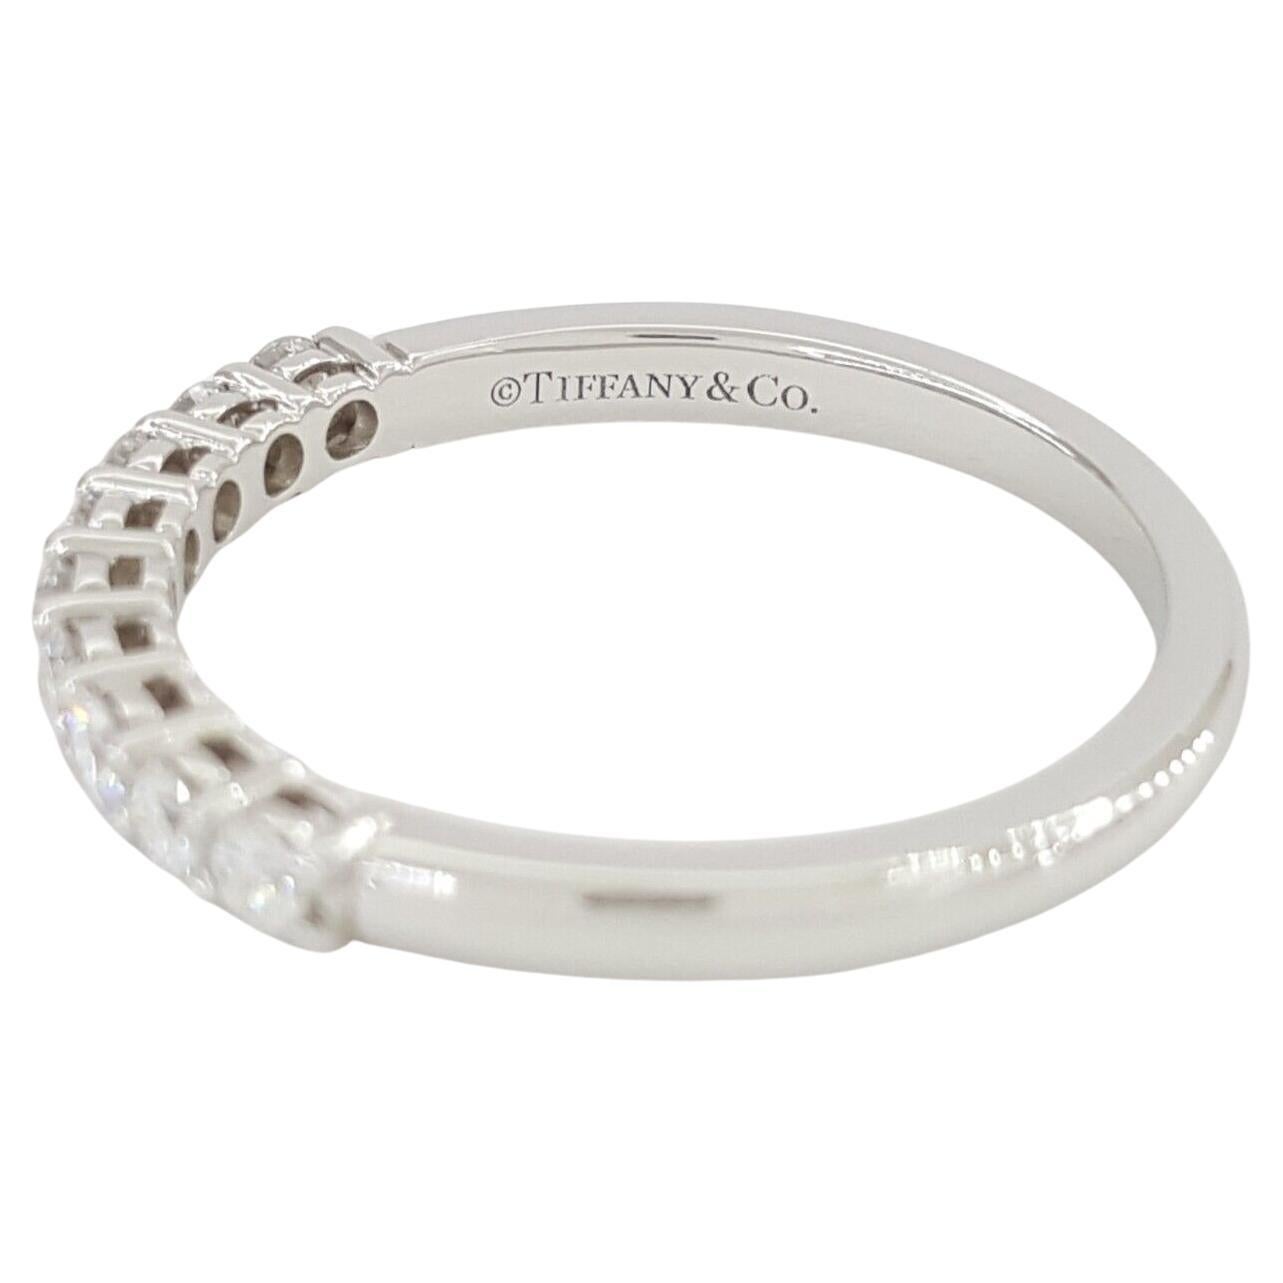 Tiffany & Co Forever Platinum Half Circle Wedding/Anniversary Band/Ring, geschmückt mit einem Gesamtgewicht von 0,27 ct Round Brilliant Cut Diamanten.

Dieser exquisite, mit Präzision und Authentizität gefertigte Ring wiegt 2,6 Gramm und hat eine